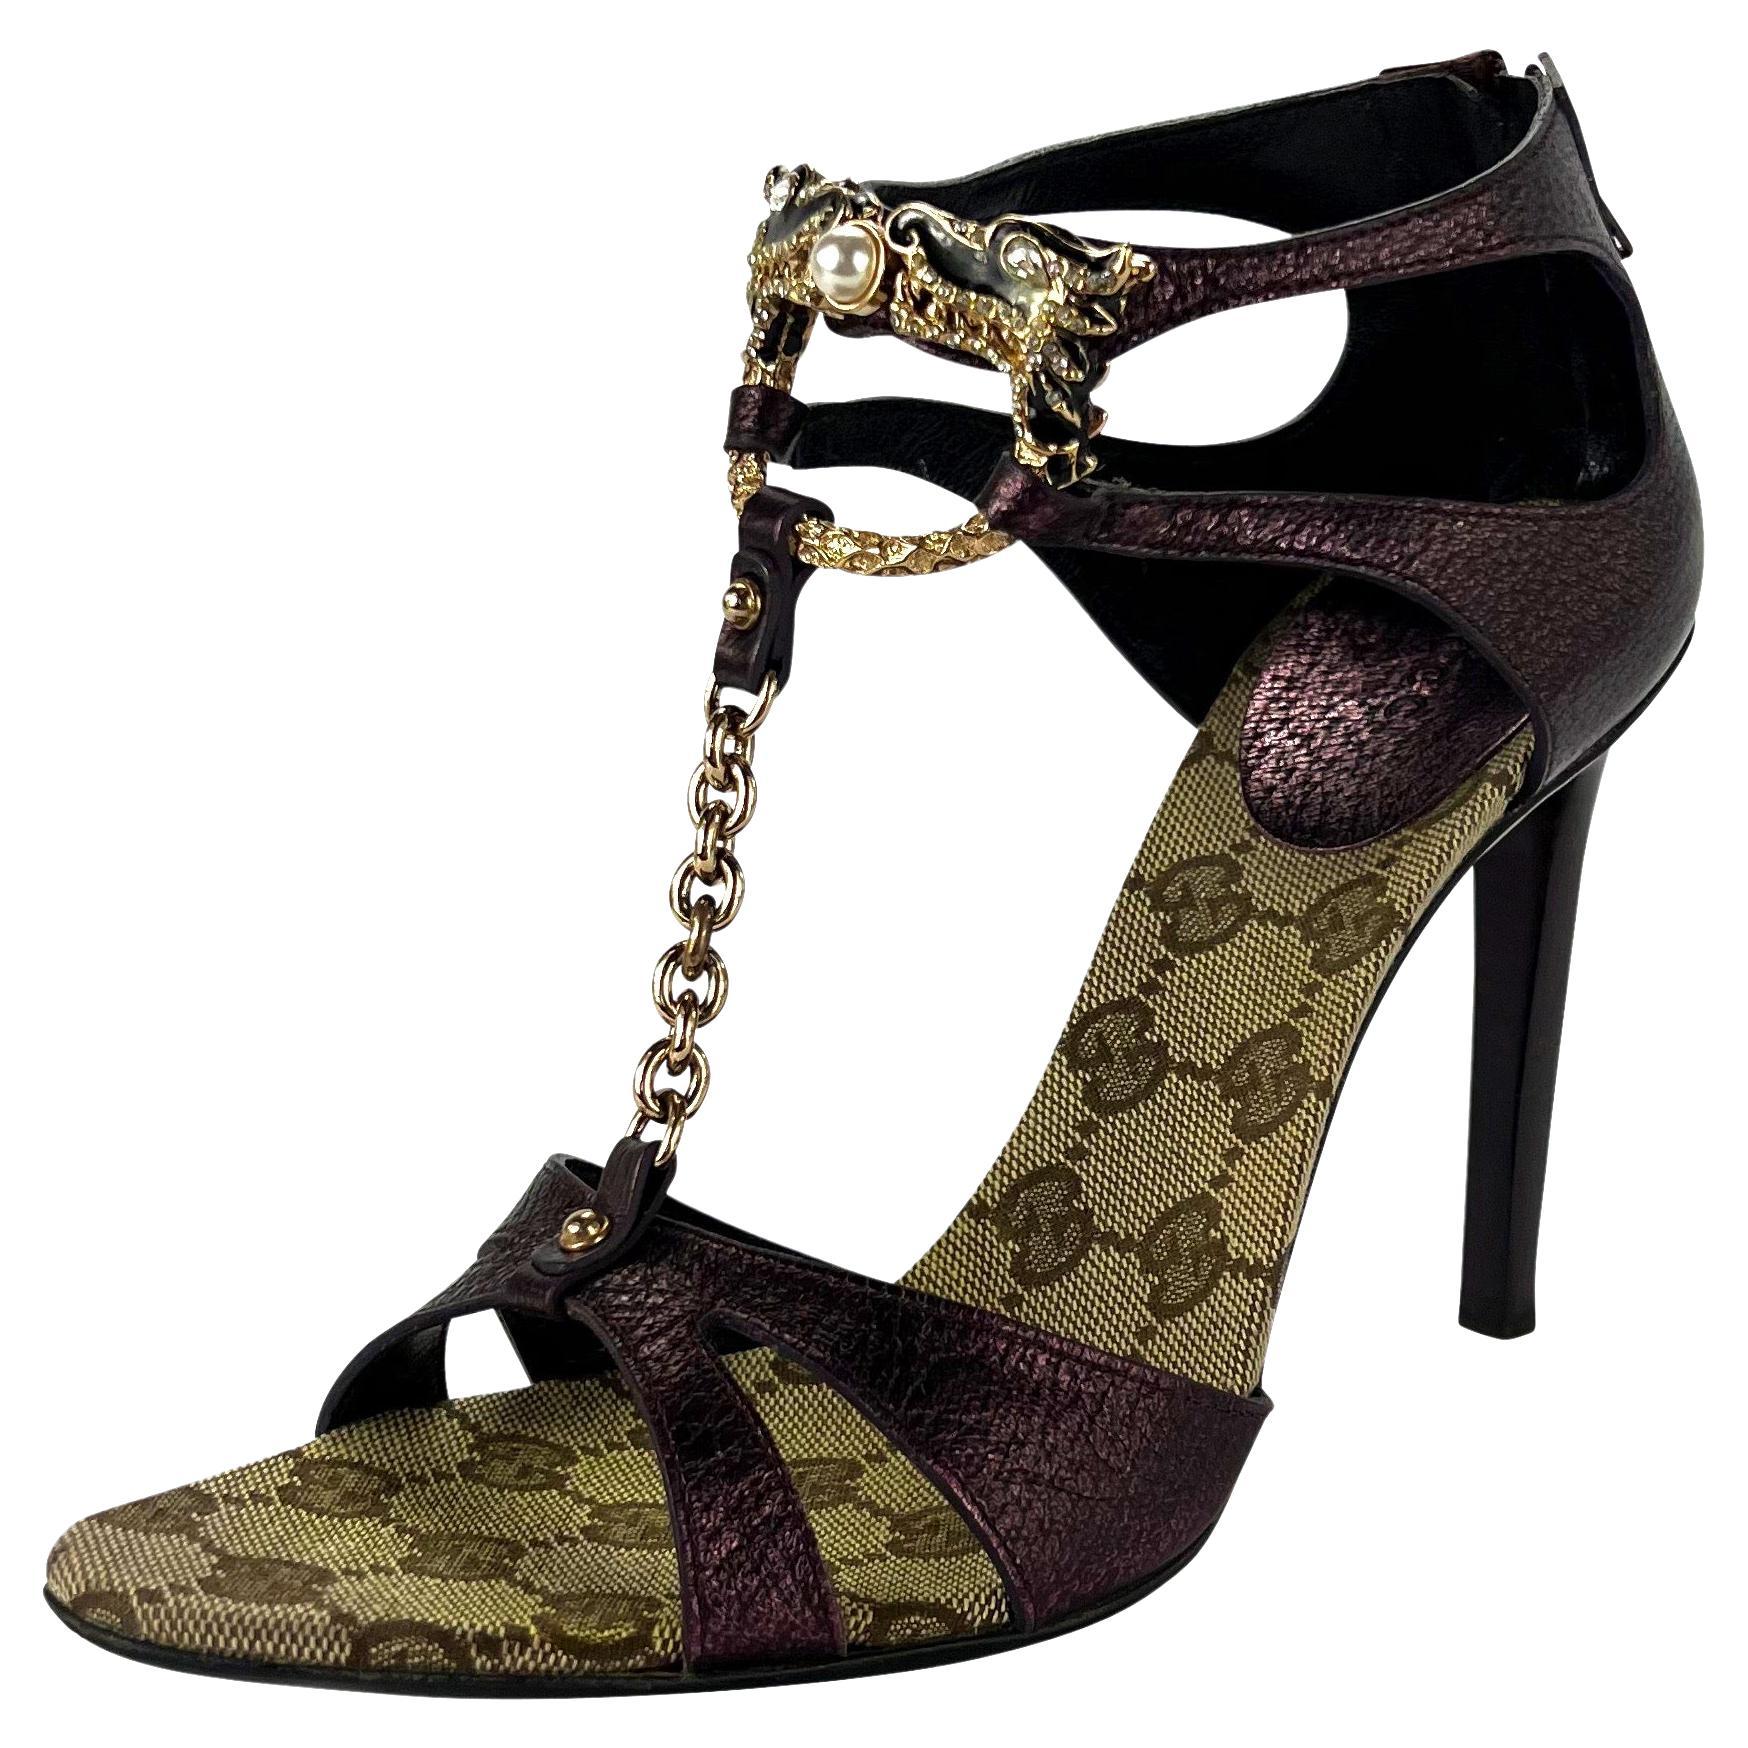 F/W 2004 Gucci by Tom Ford Rhinestone Purple Dragon Chain Heels Size 8.5 B